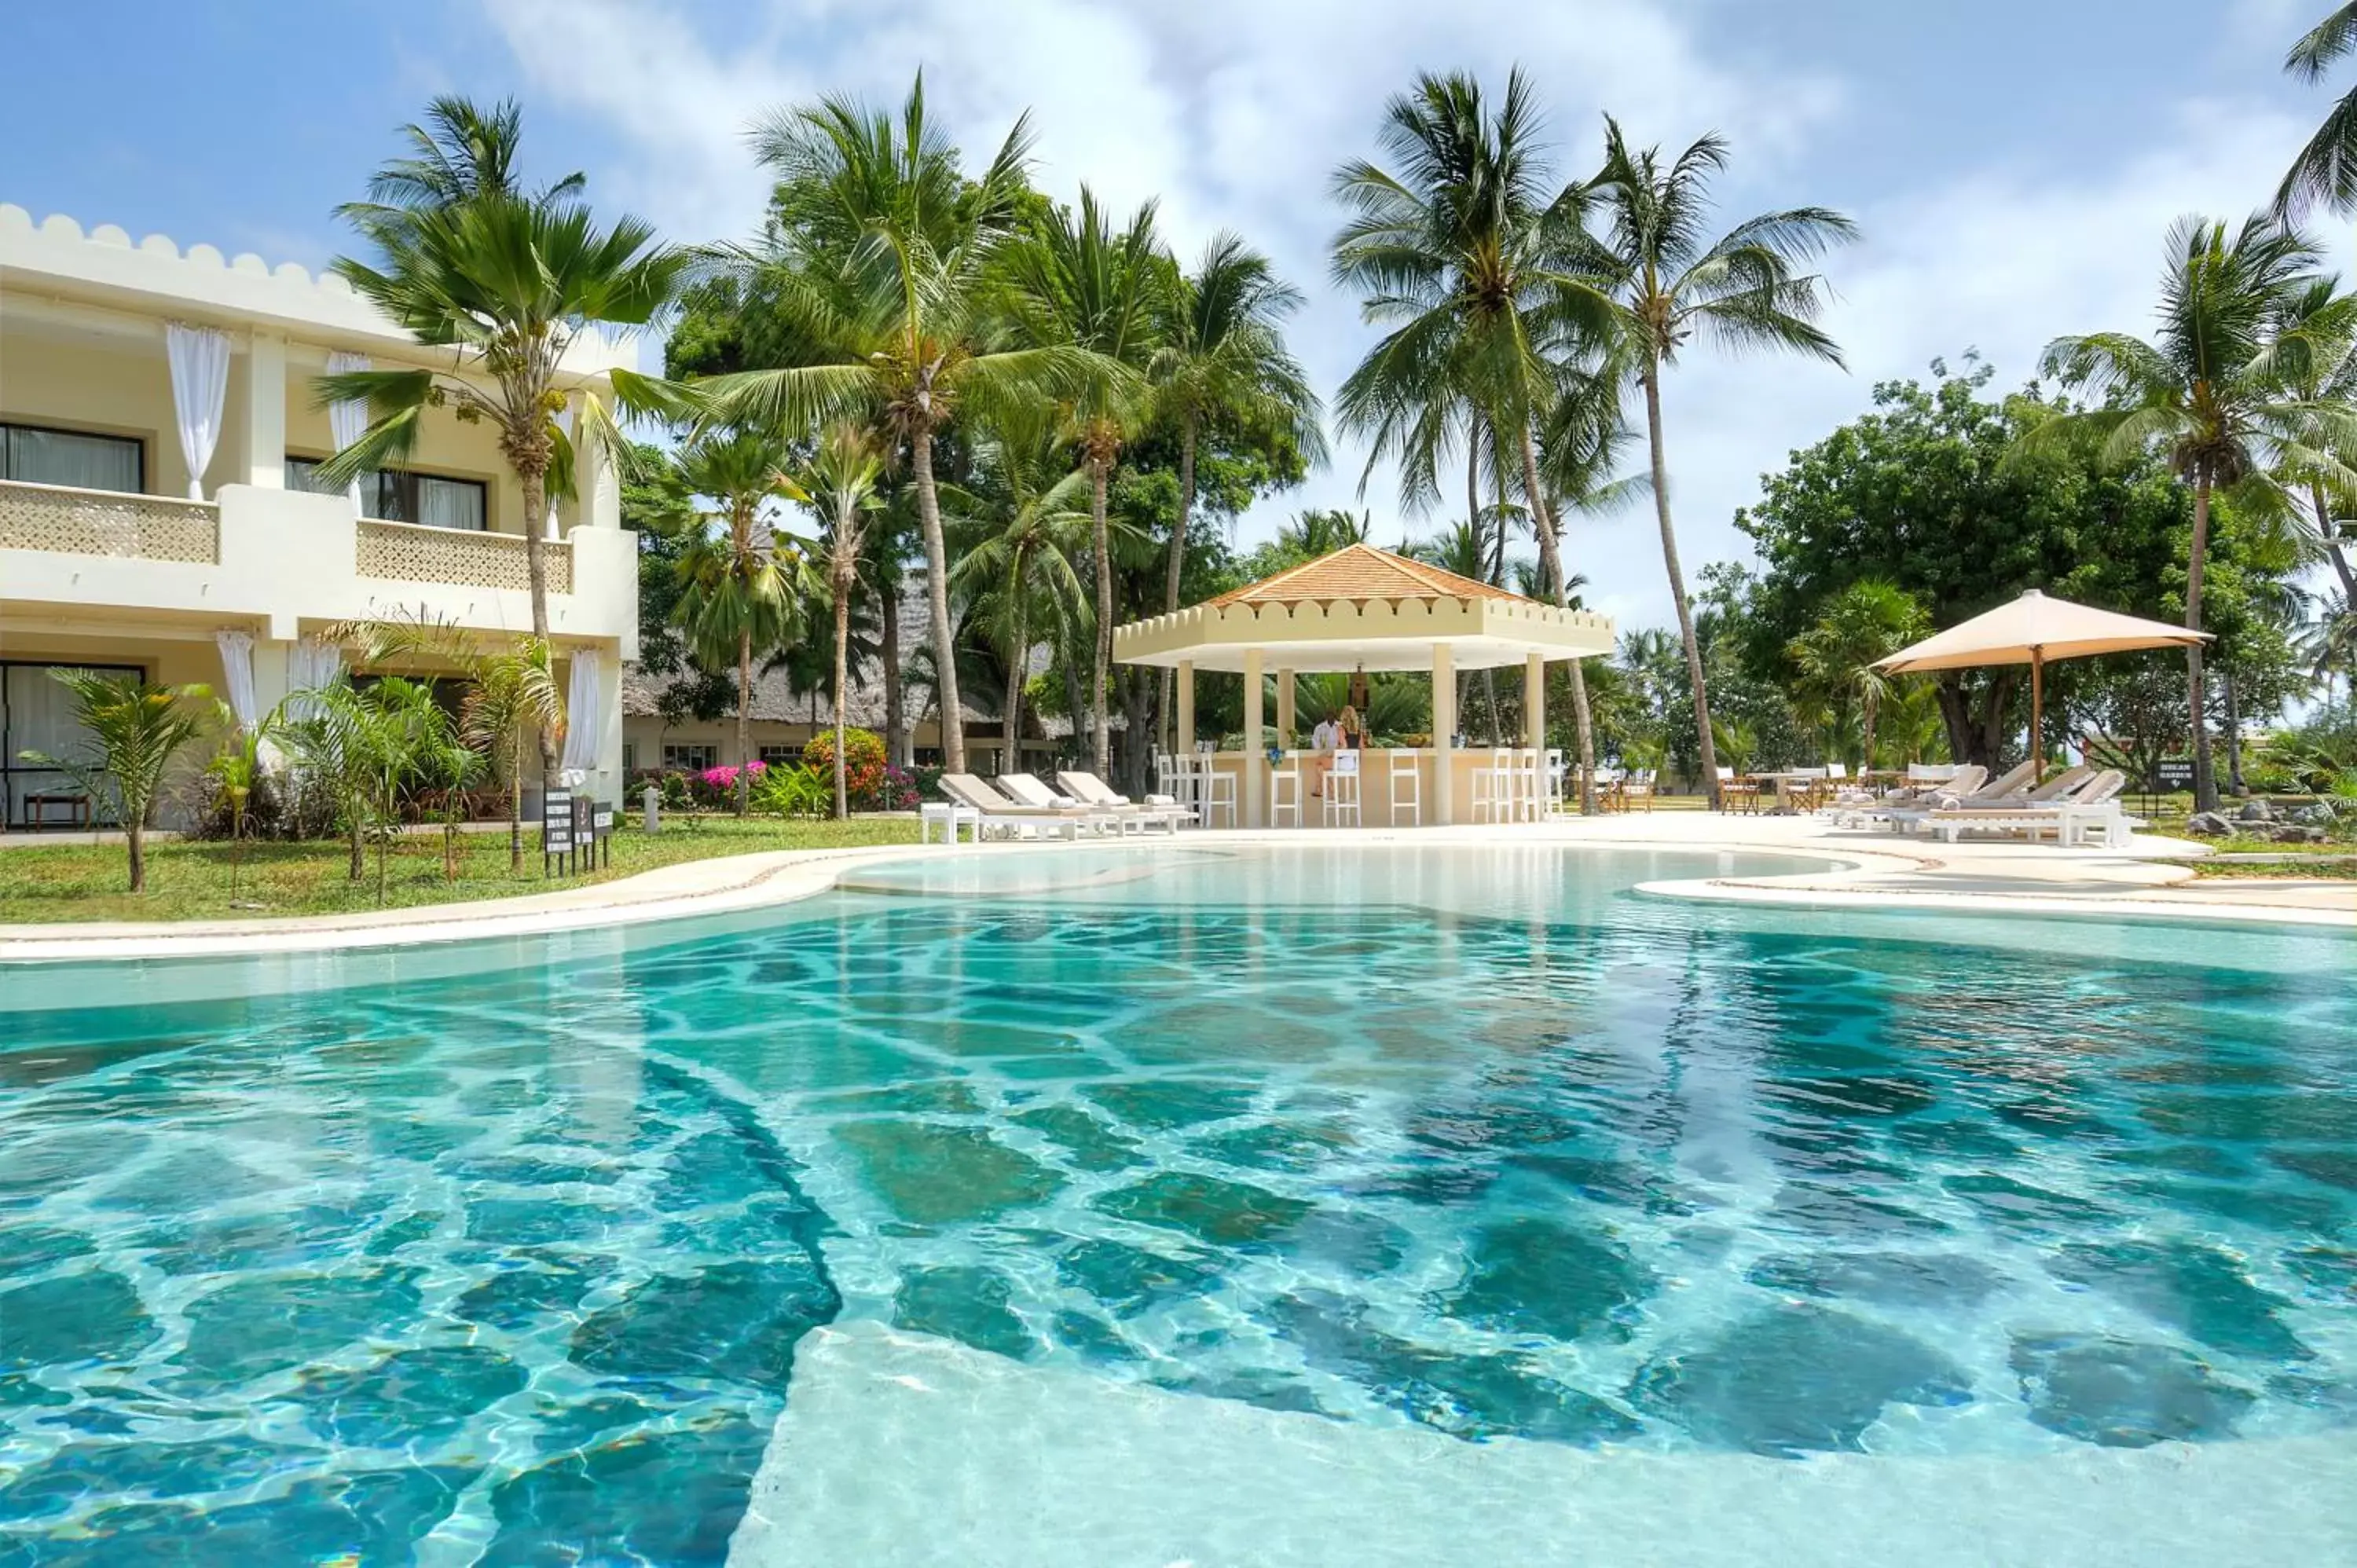 Swimming Pool in Sandies Tropical Village